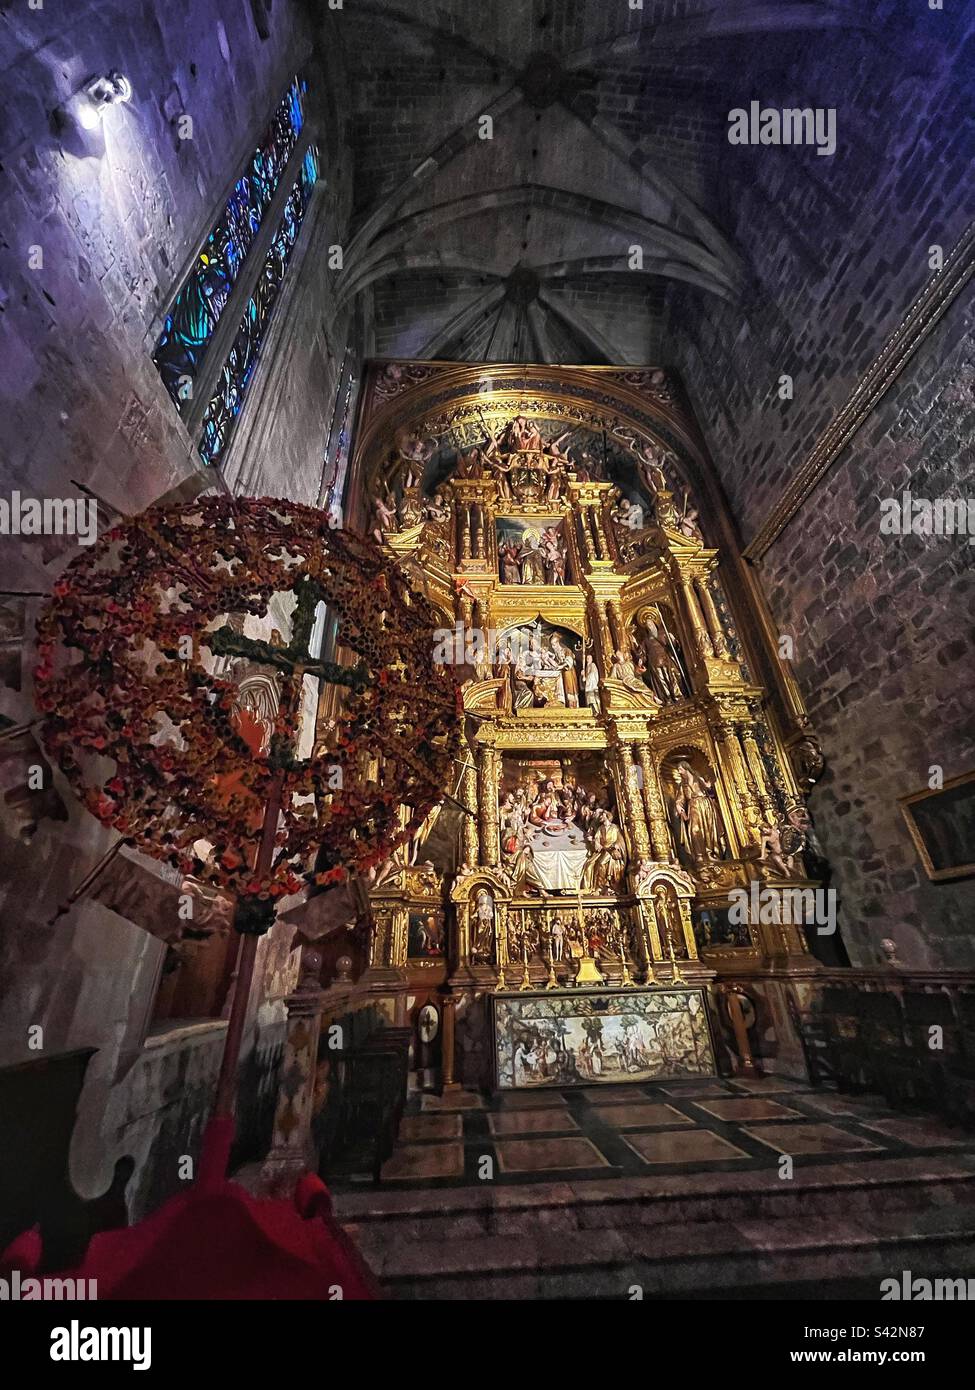 CHAPELLE DE CORPUS CHRISTI, Cathédrale de Palma de Majorque - la dernière Cène montrée. Banque D'Images